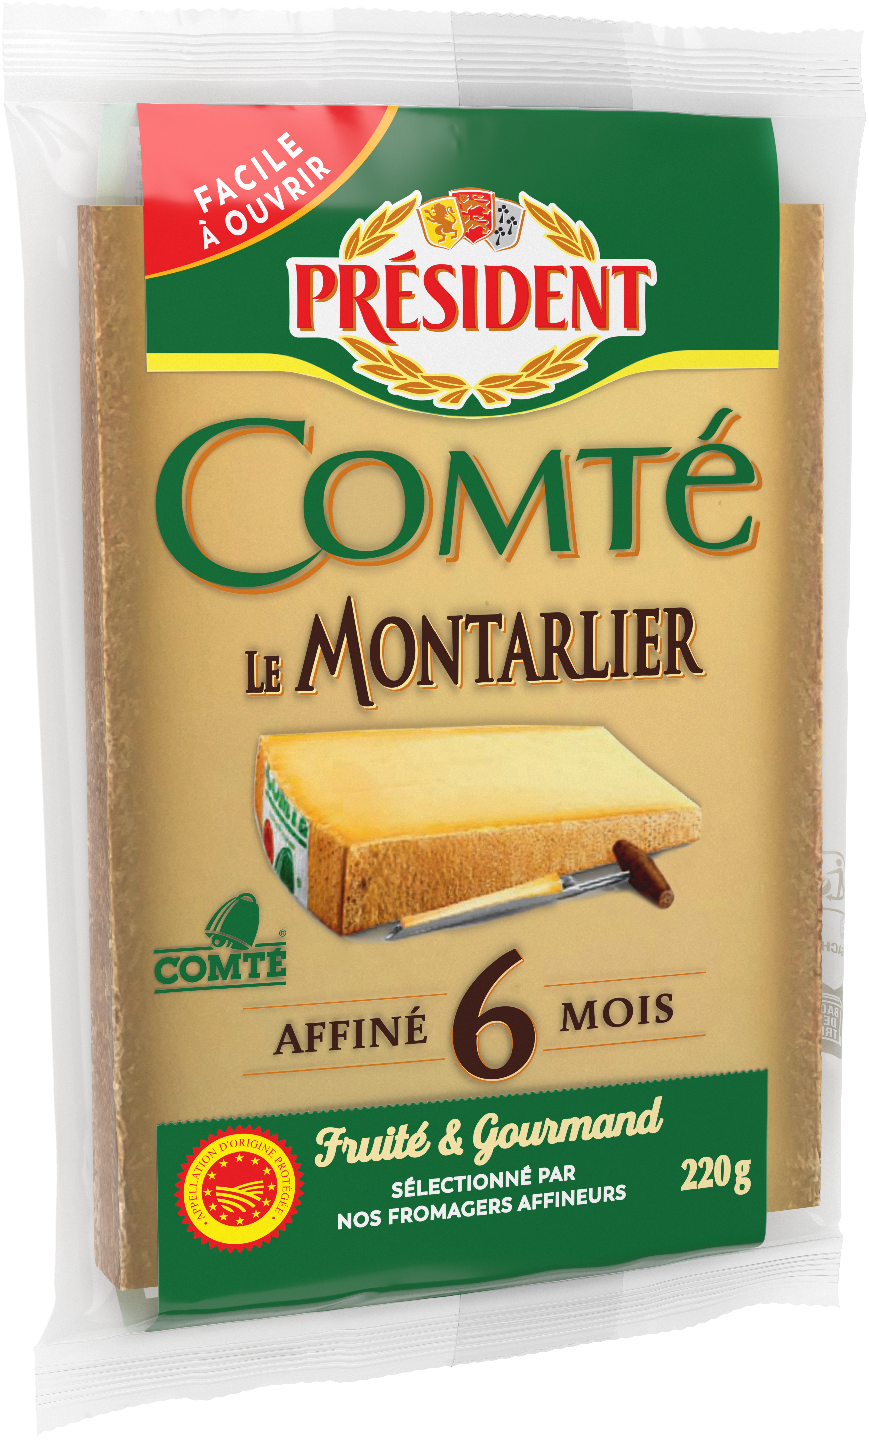 President Comte juusto 220 g